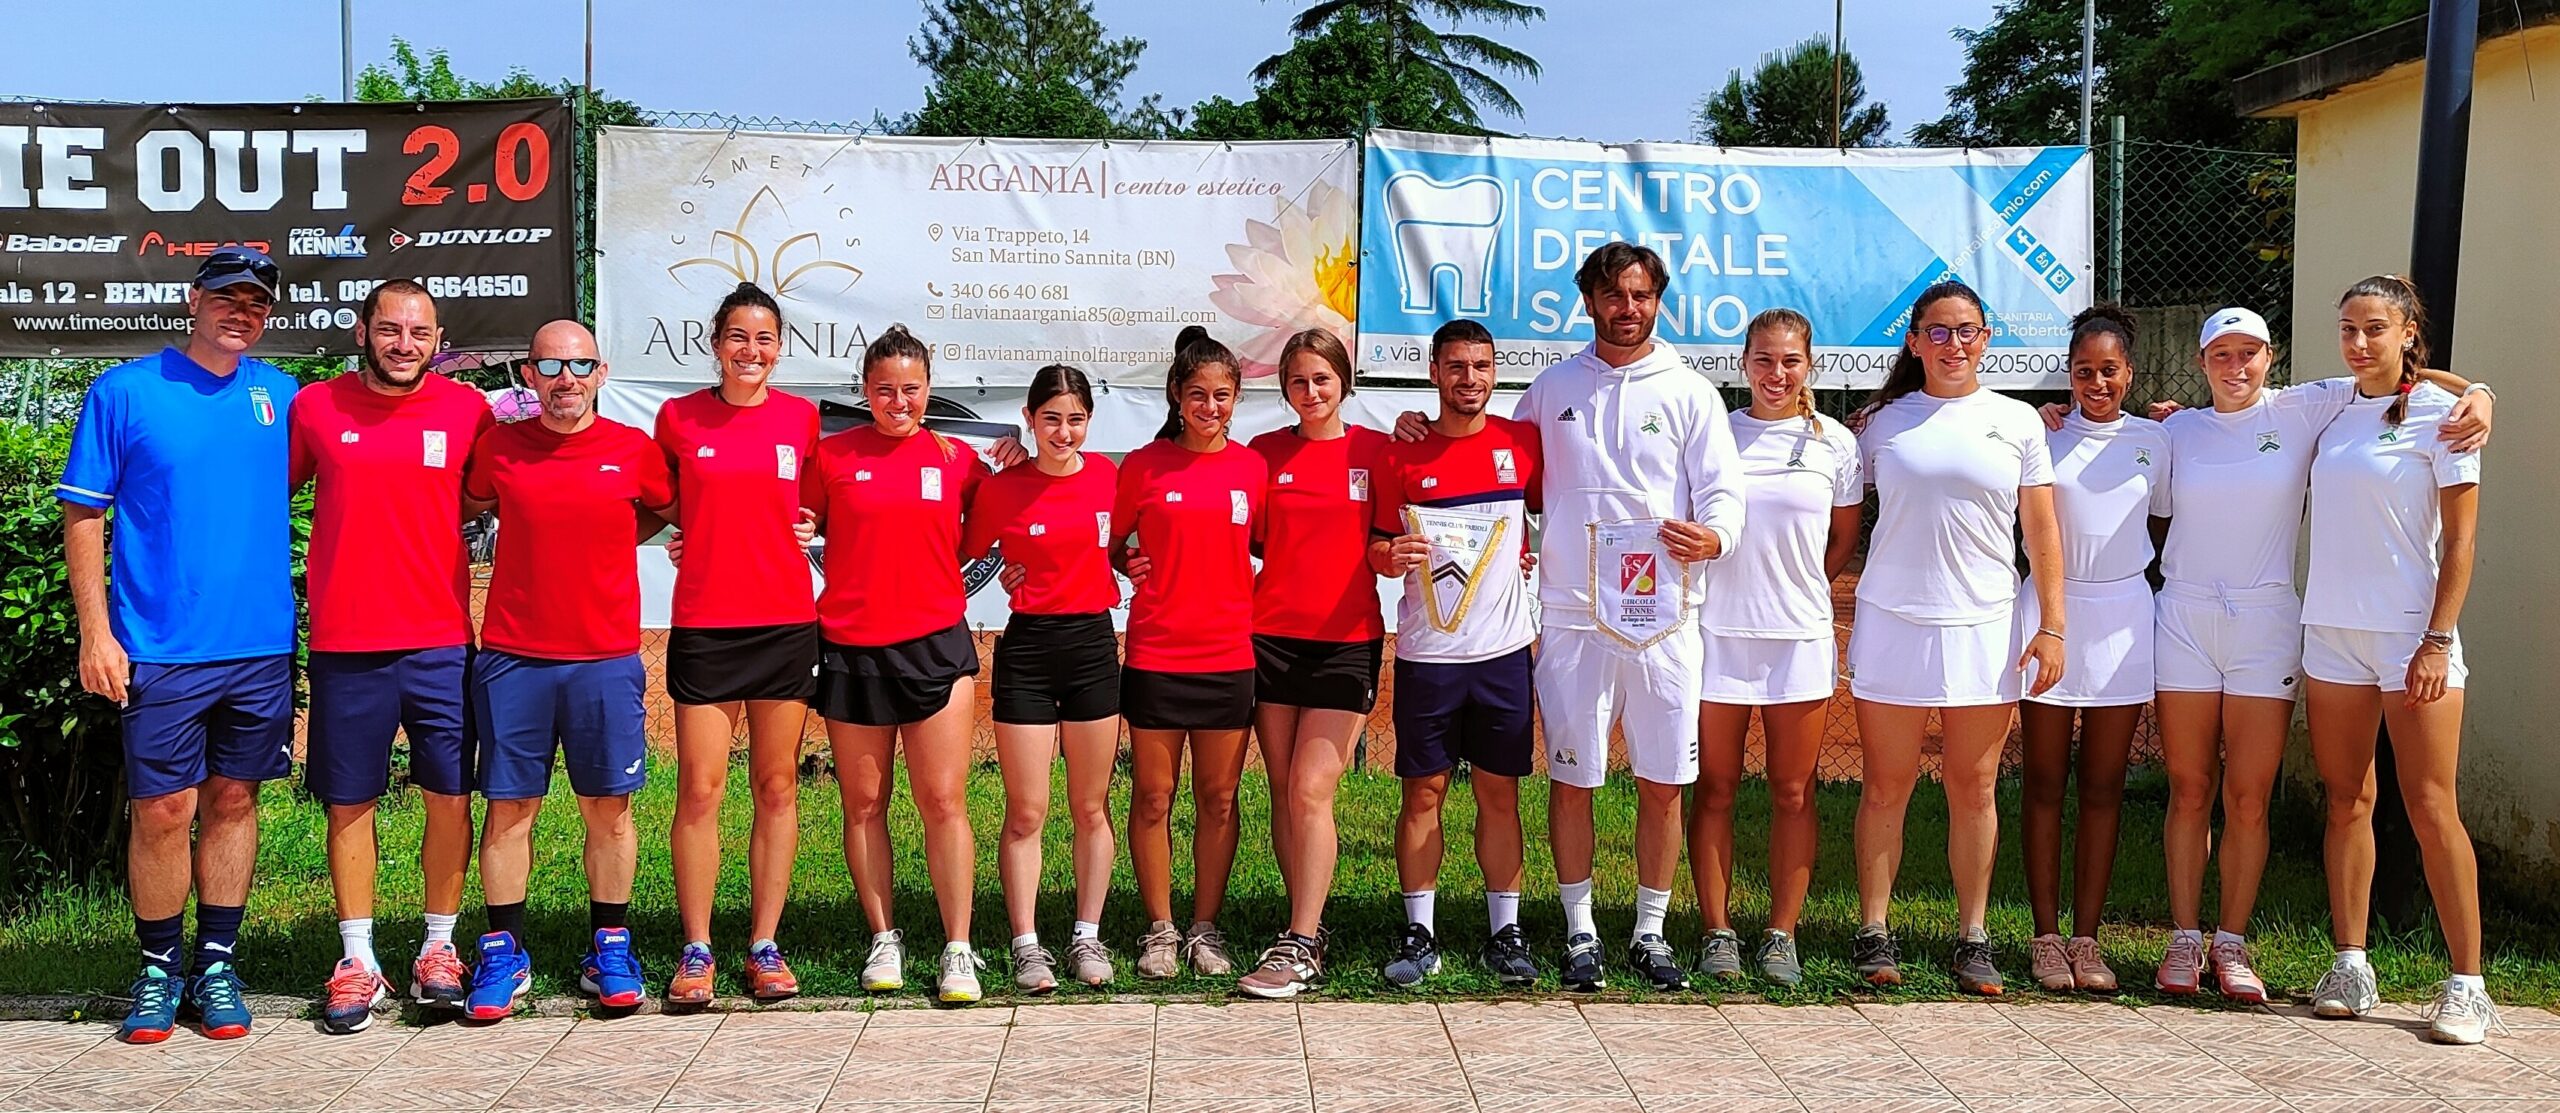 Tennis: Pareggio per le ragazze del CT San Giorgio del Sannio in B2 e sconfitta per i ragazzi del T.C. 2002 di Benevento in B1